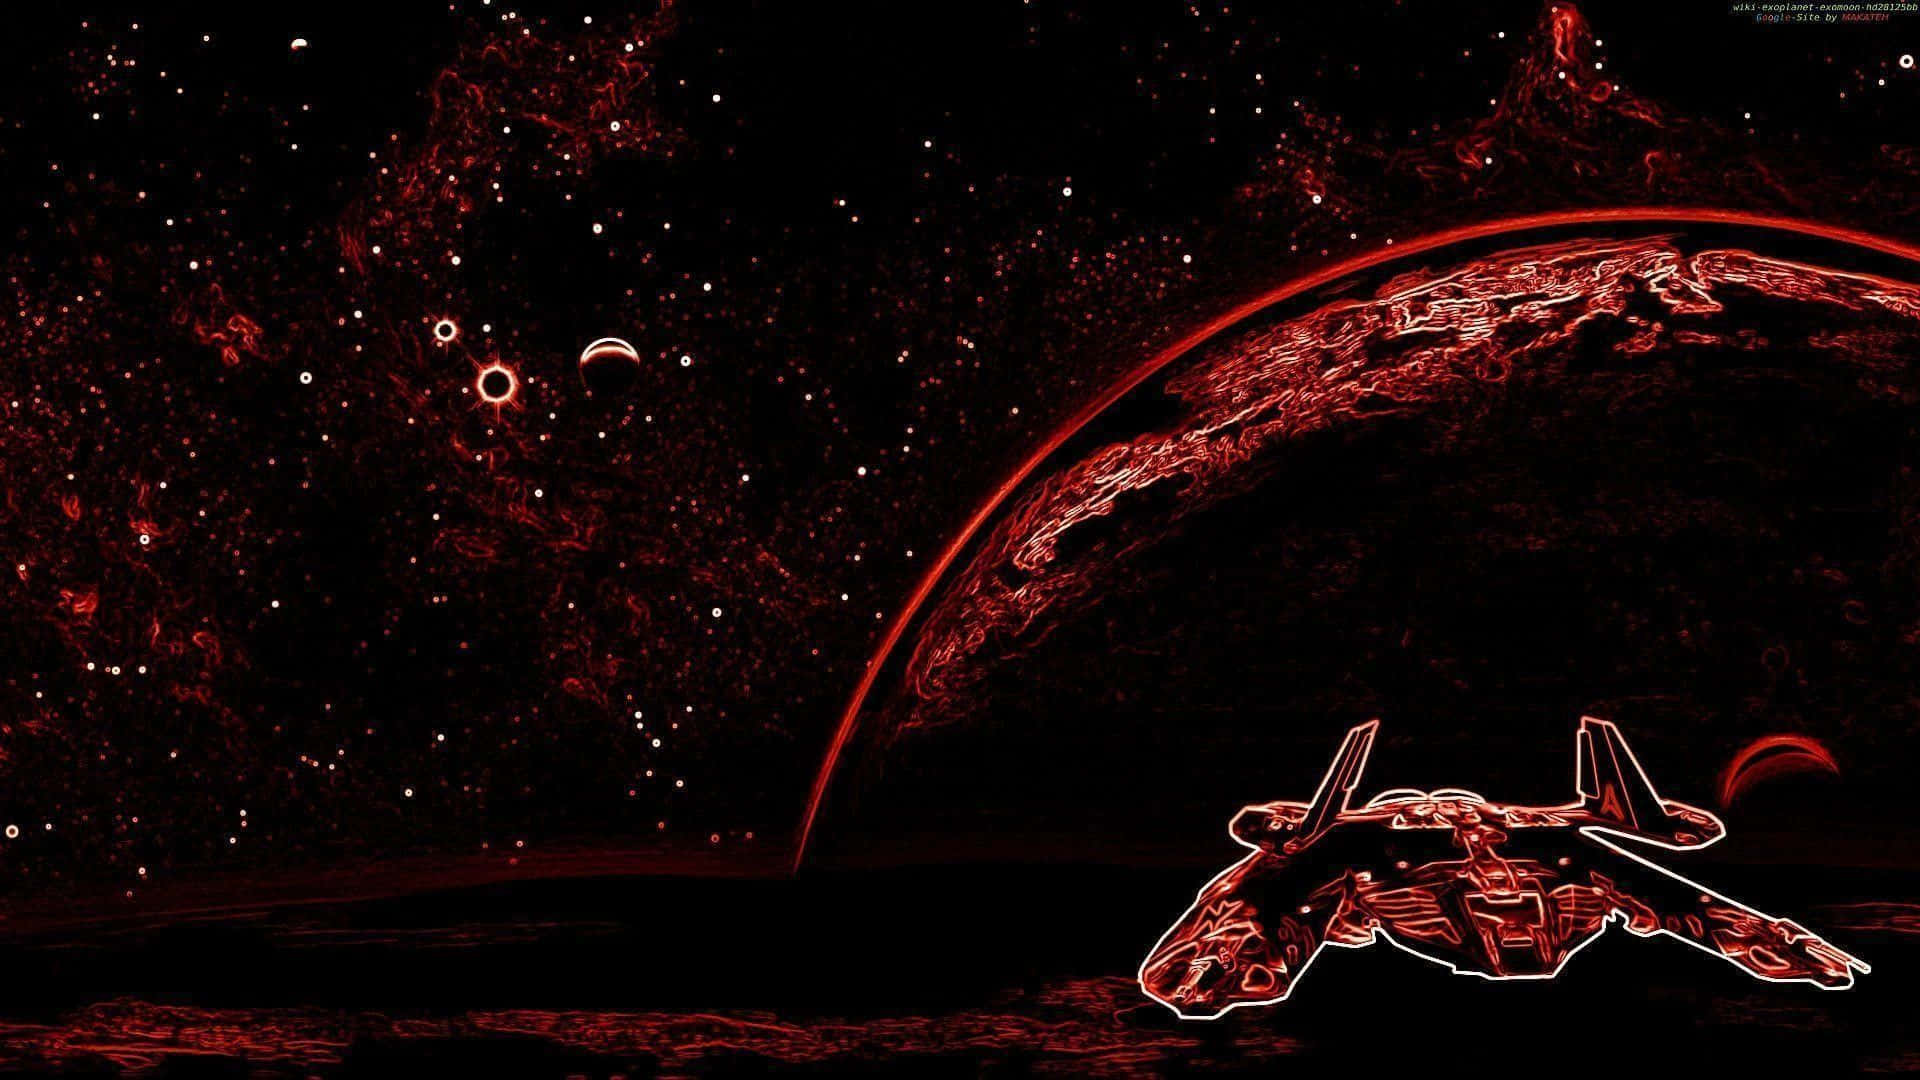 Portátilcon Estética Roja De Planetas Y Estrellas. Fondo de pantalla